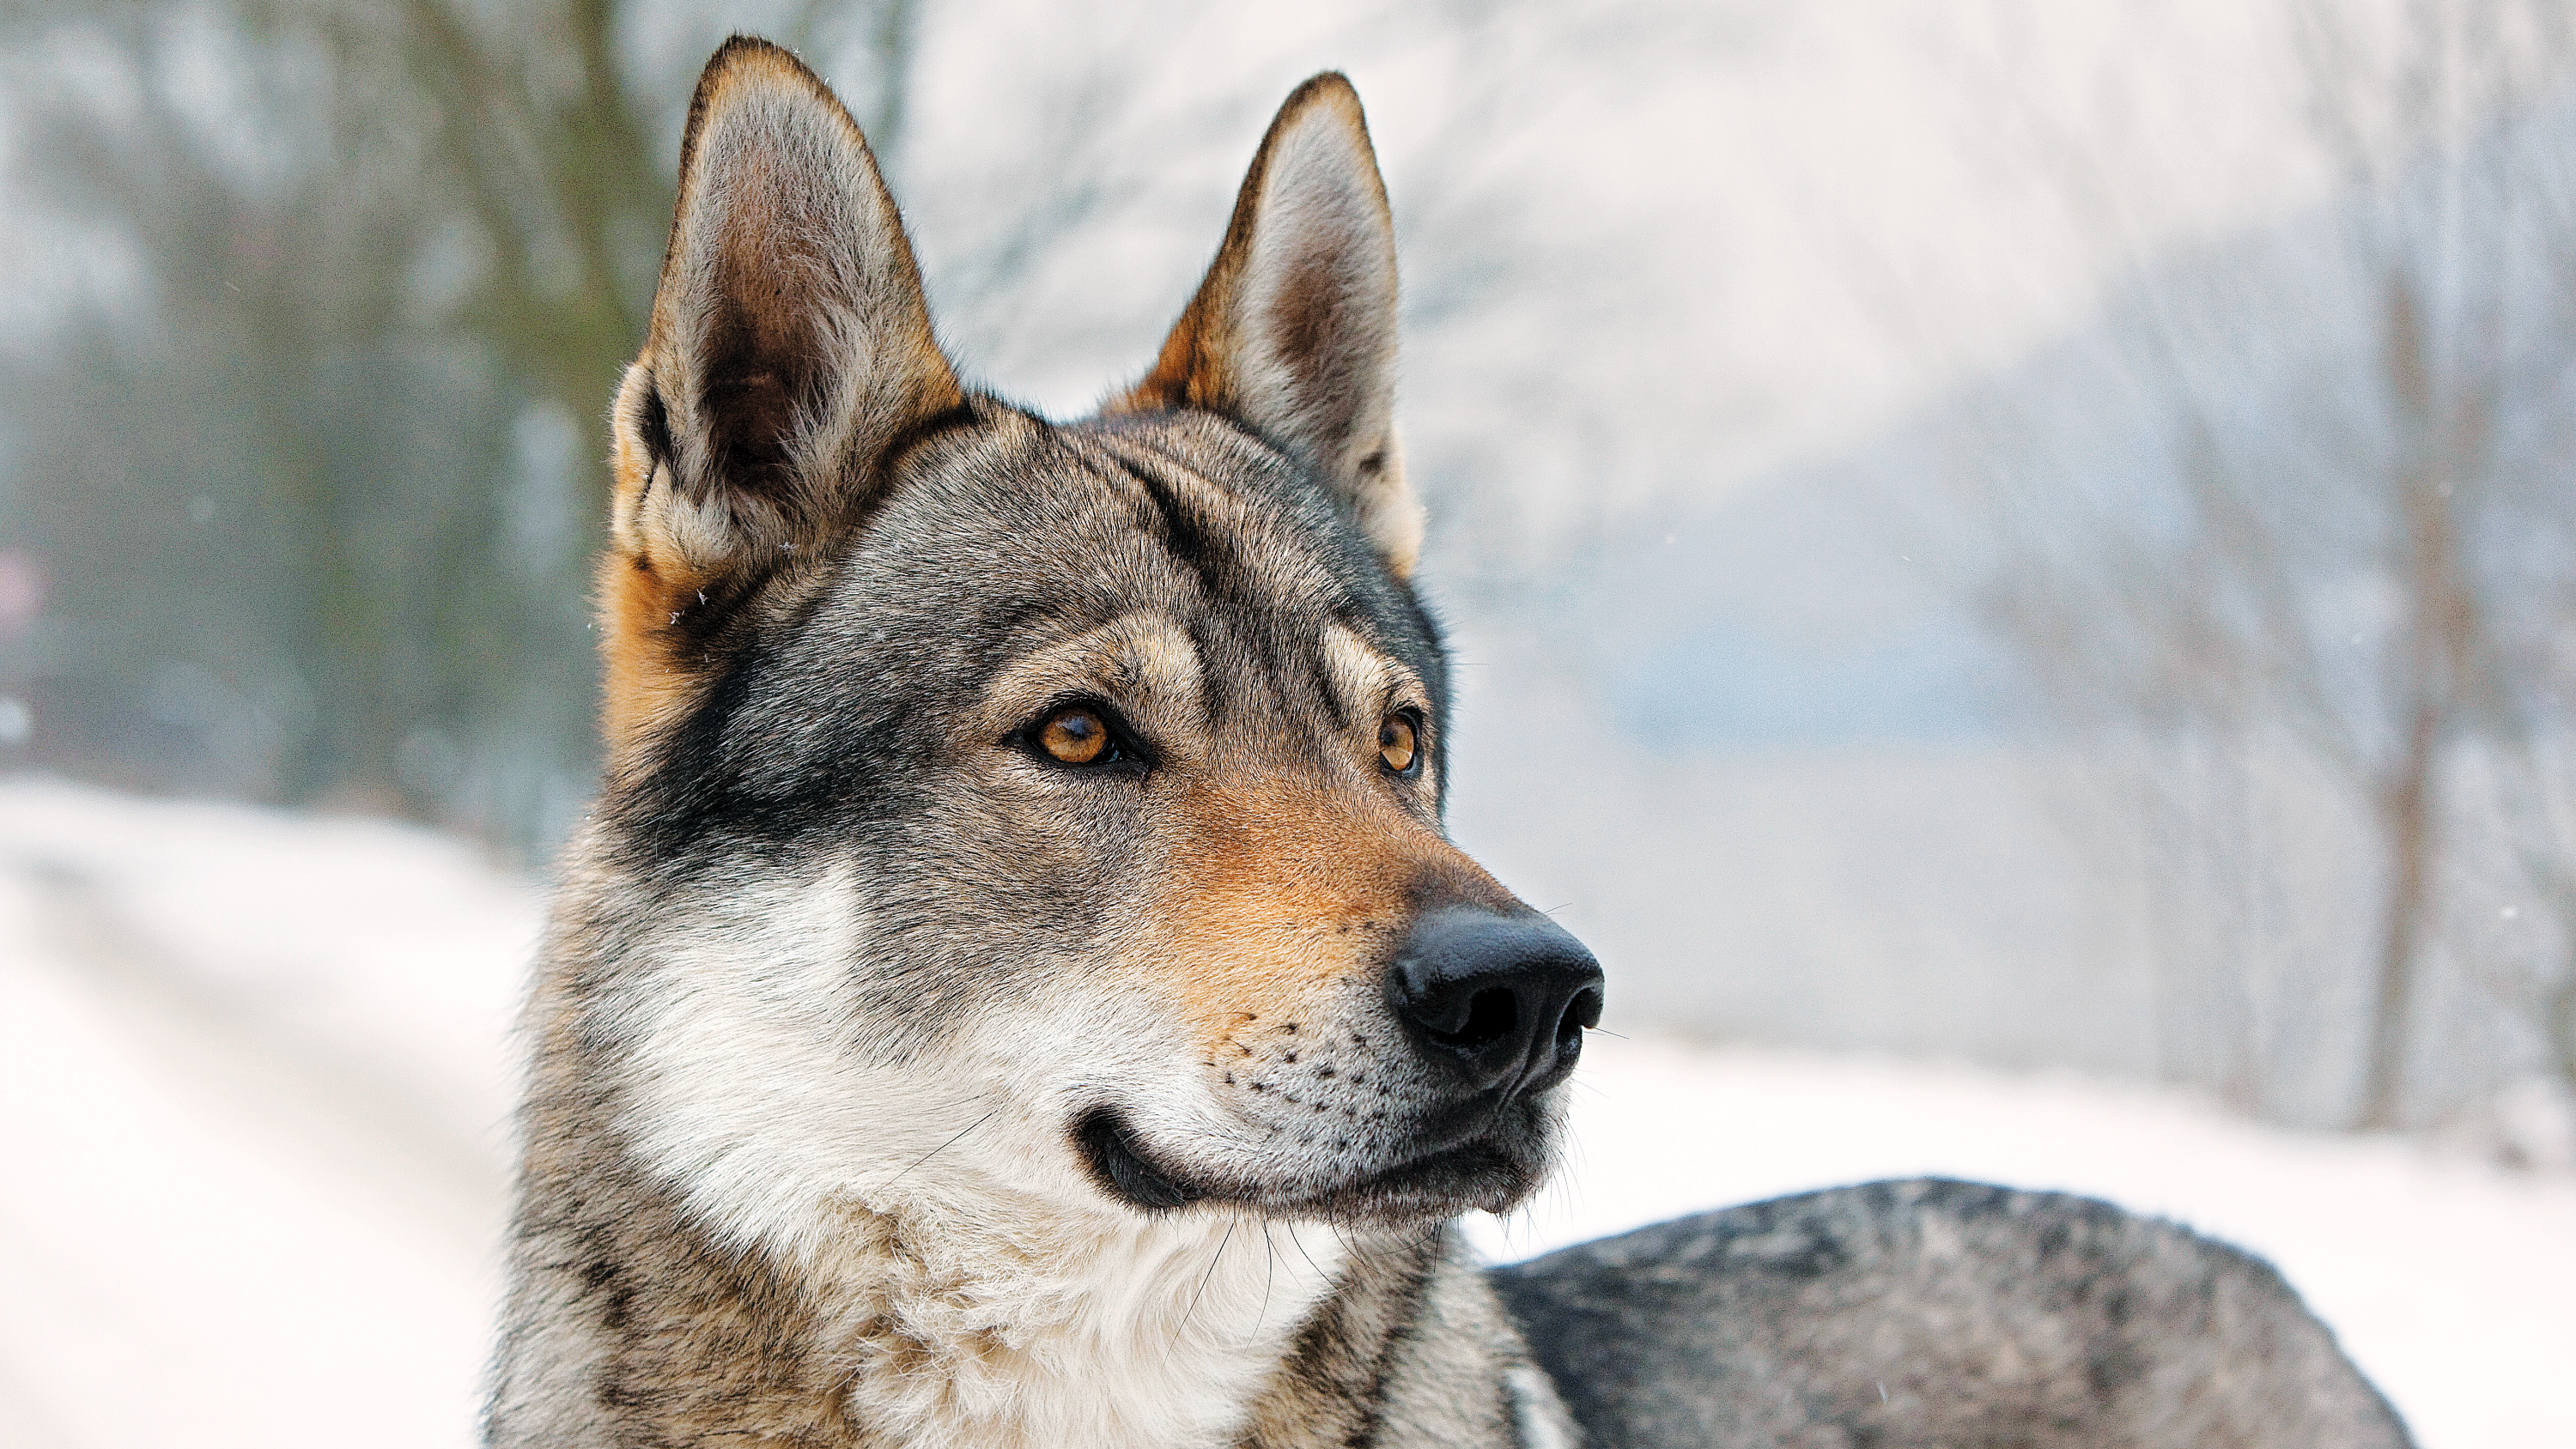 Czechoslovakian Wolfdog standing in a snowy forest